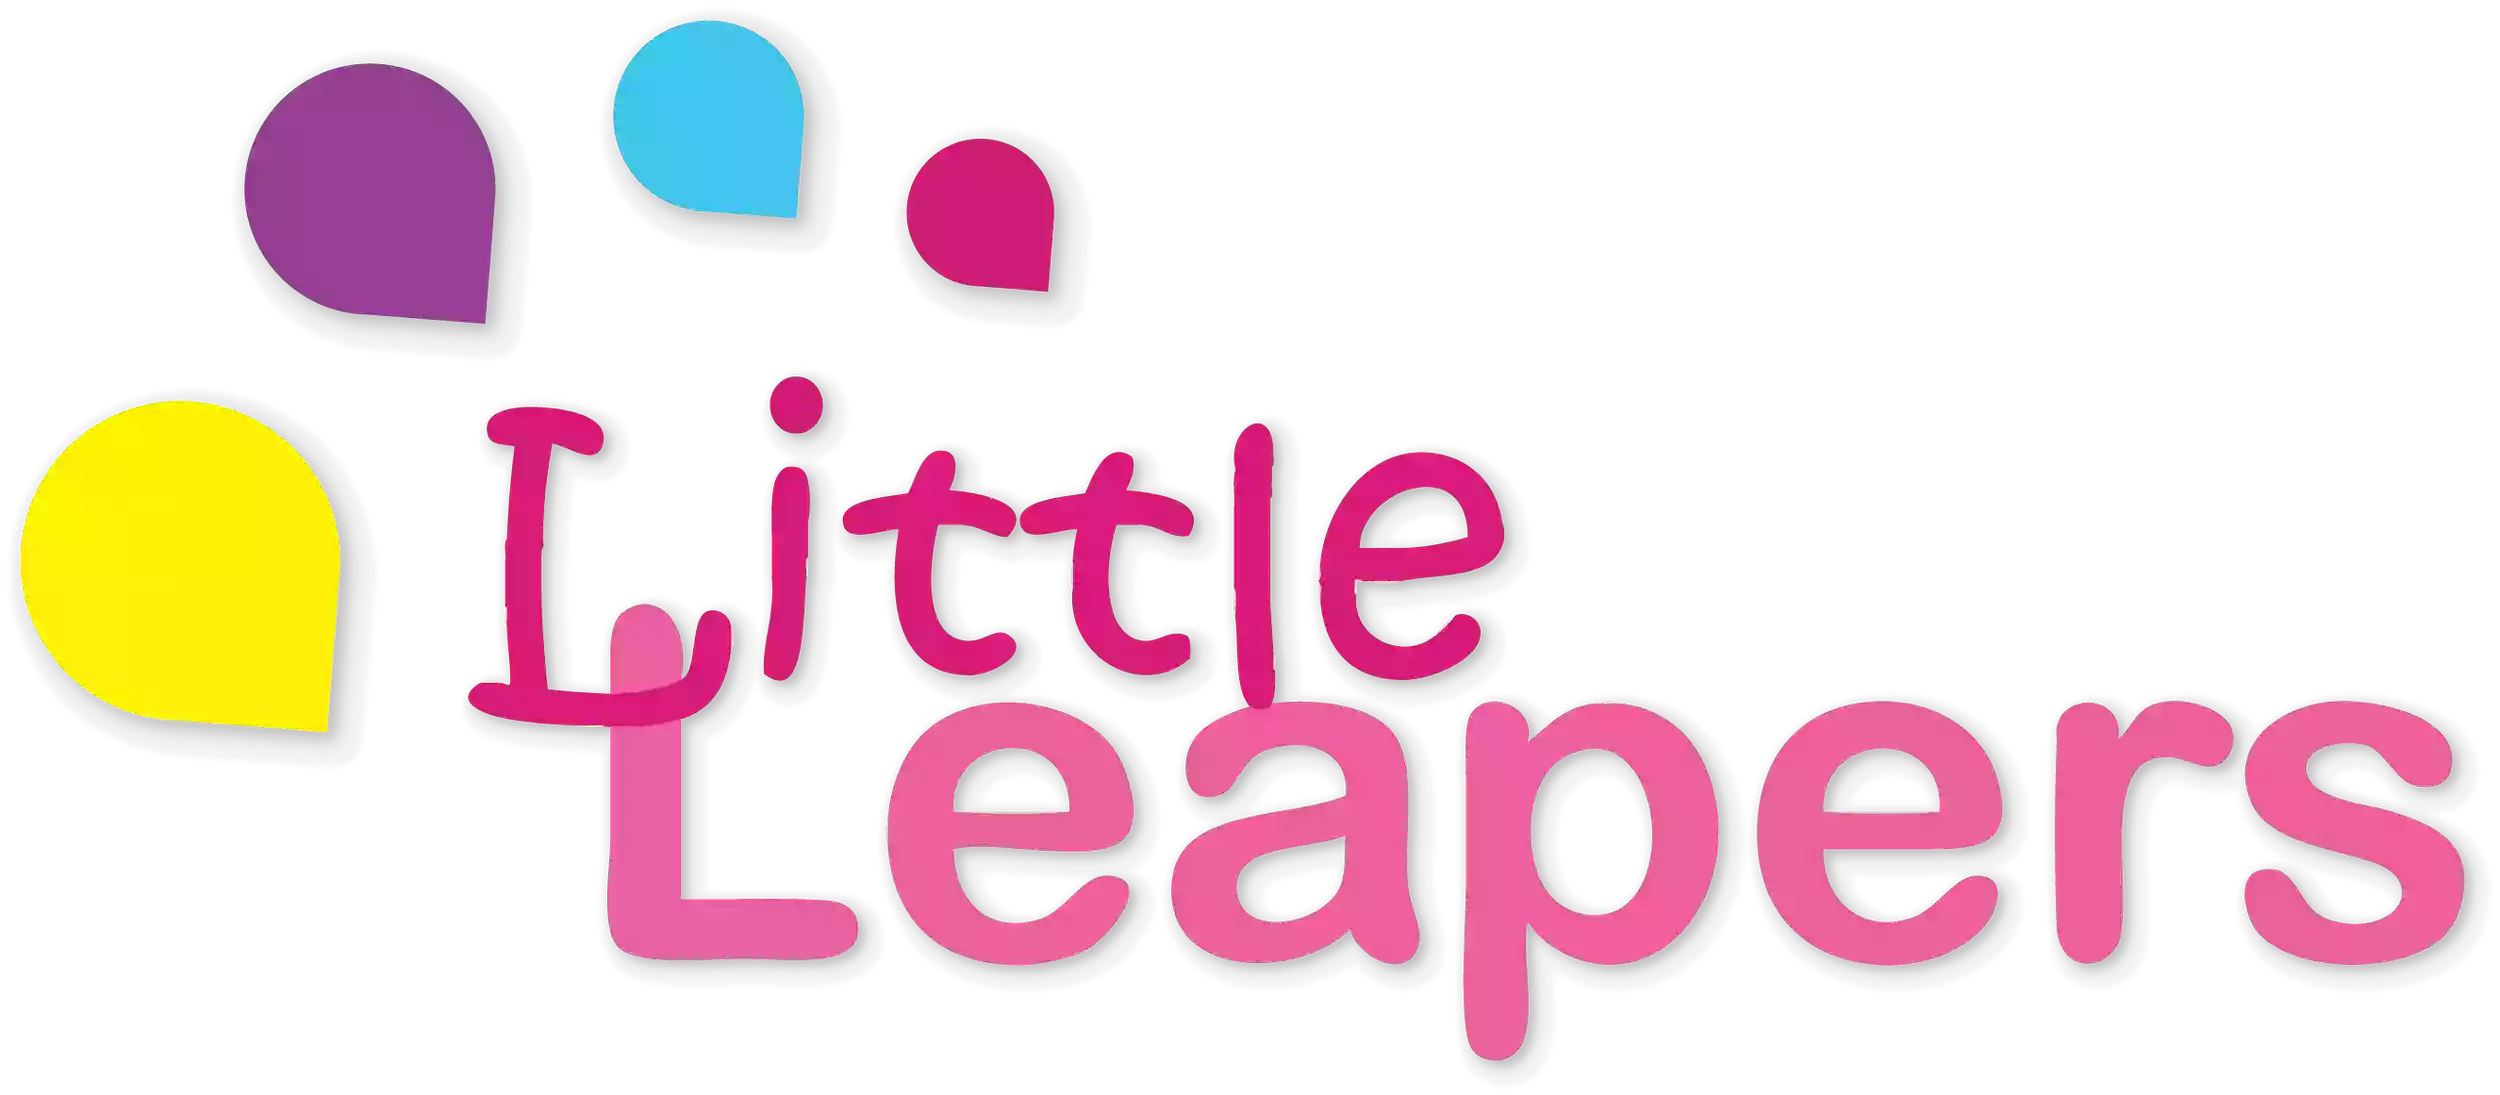 Little Leapers Roanoke